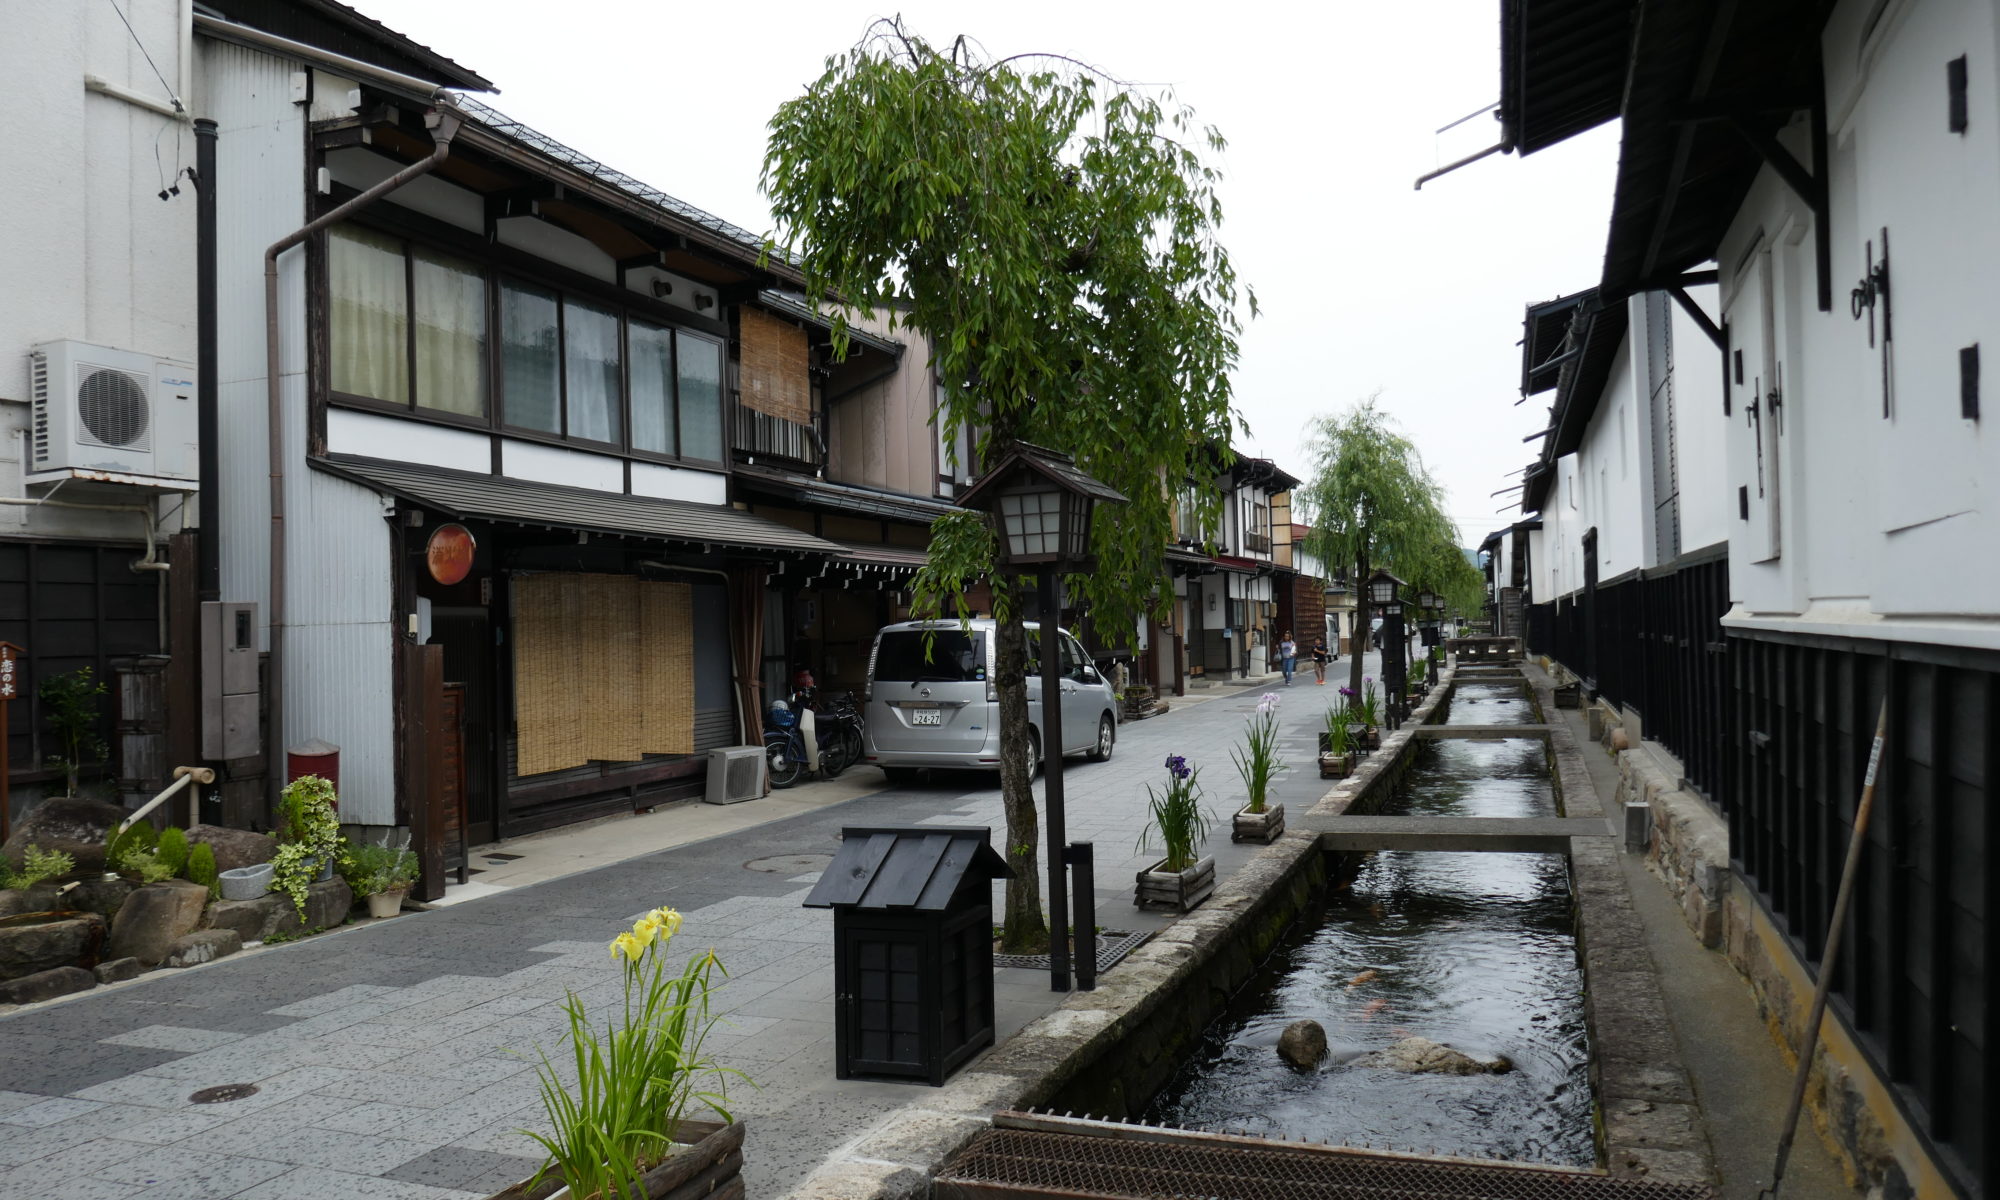 Furukawa merchant buildings